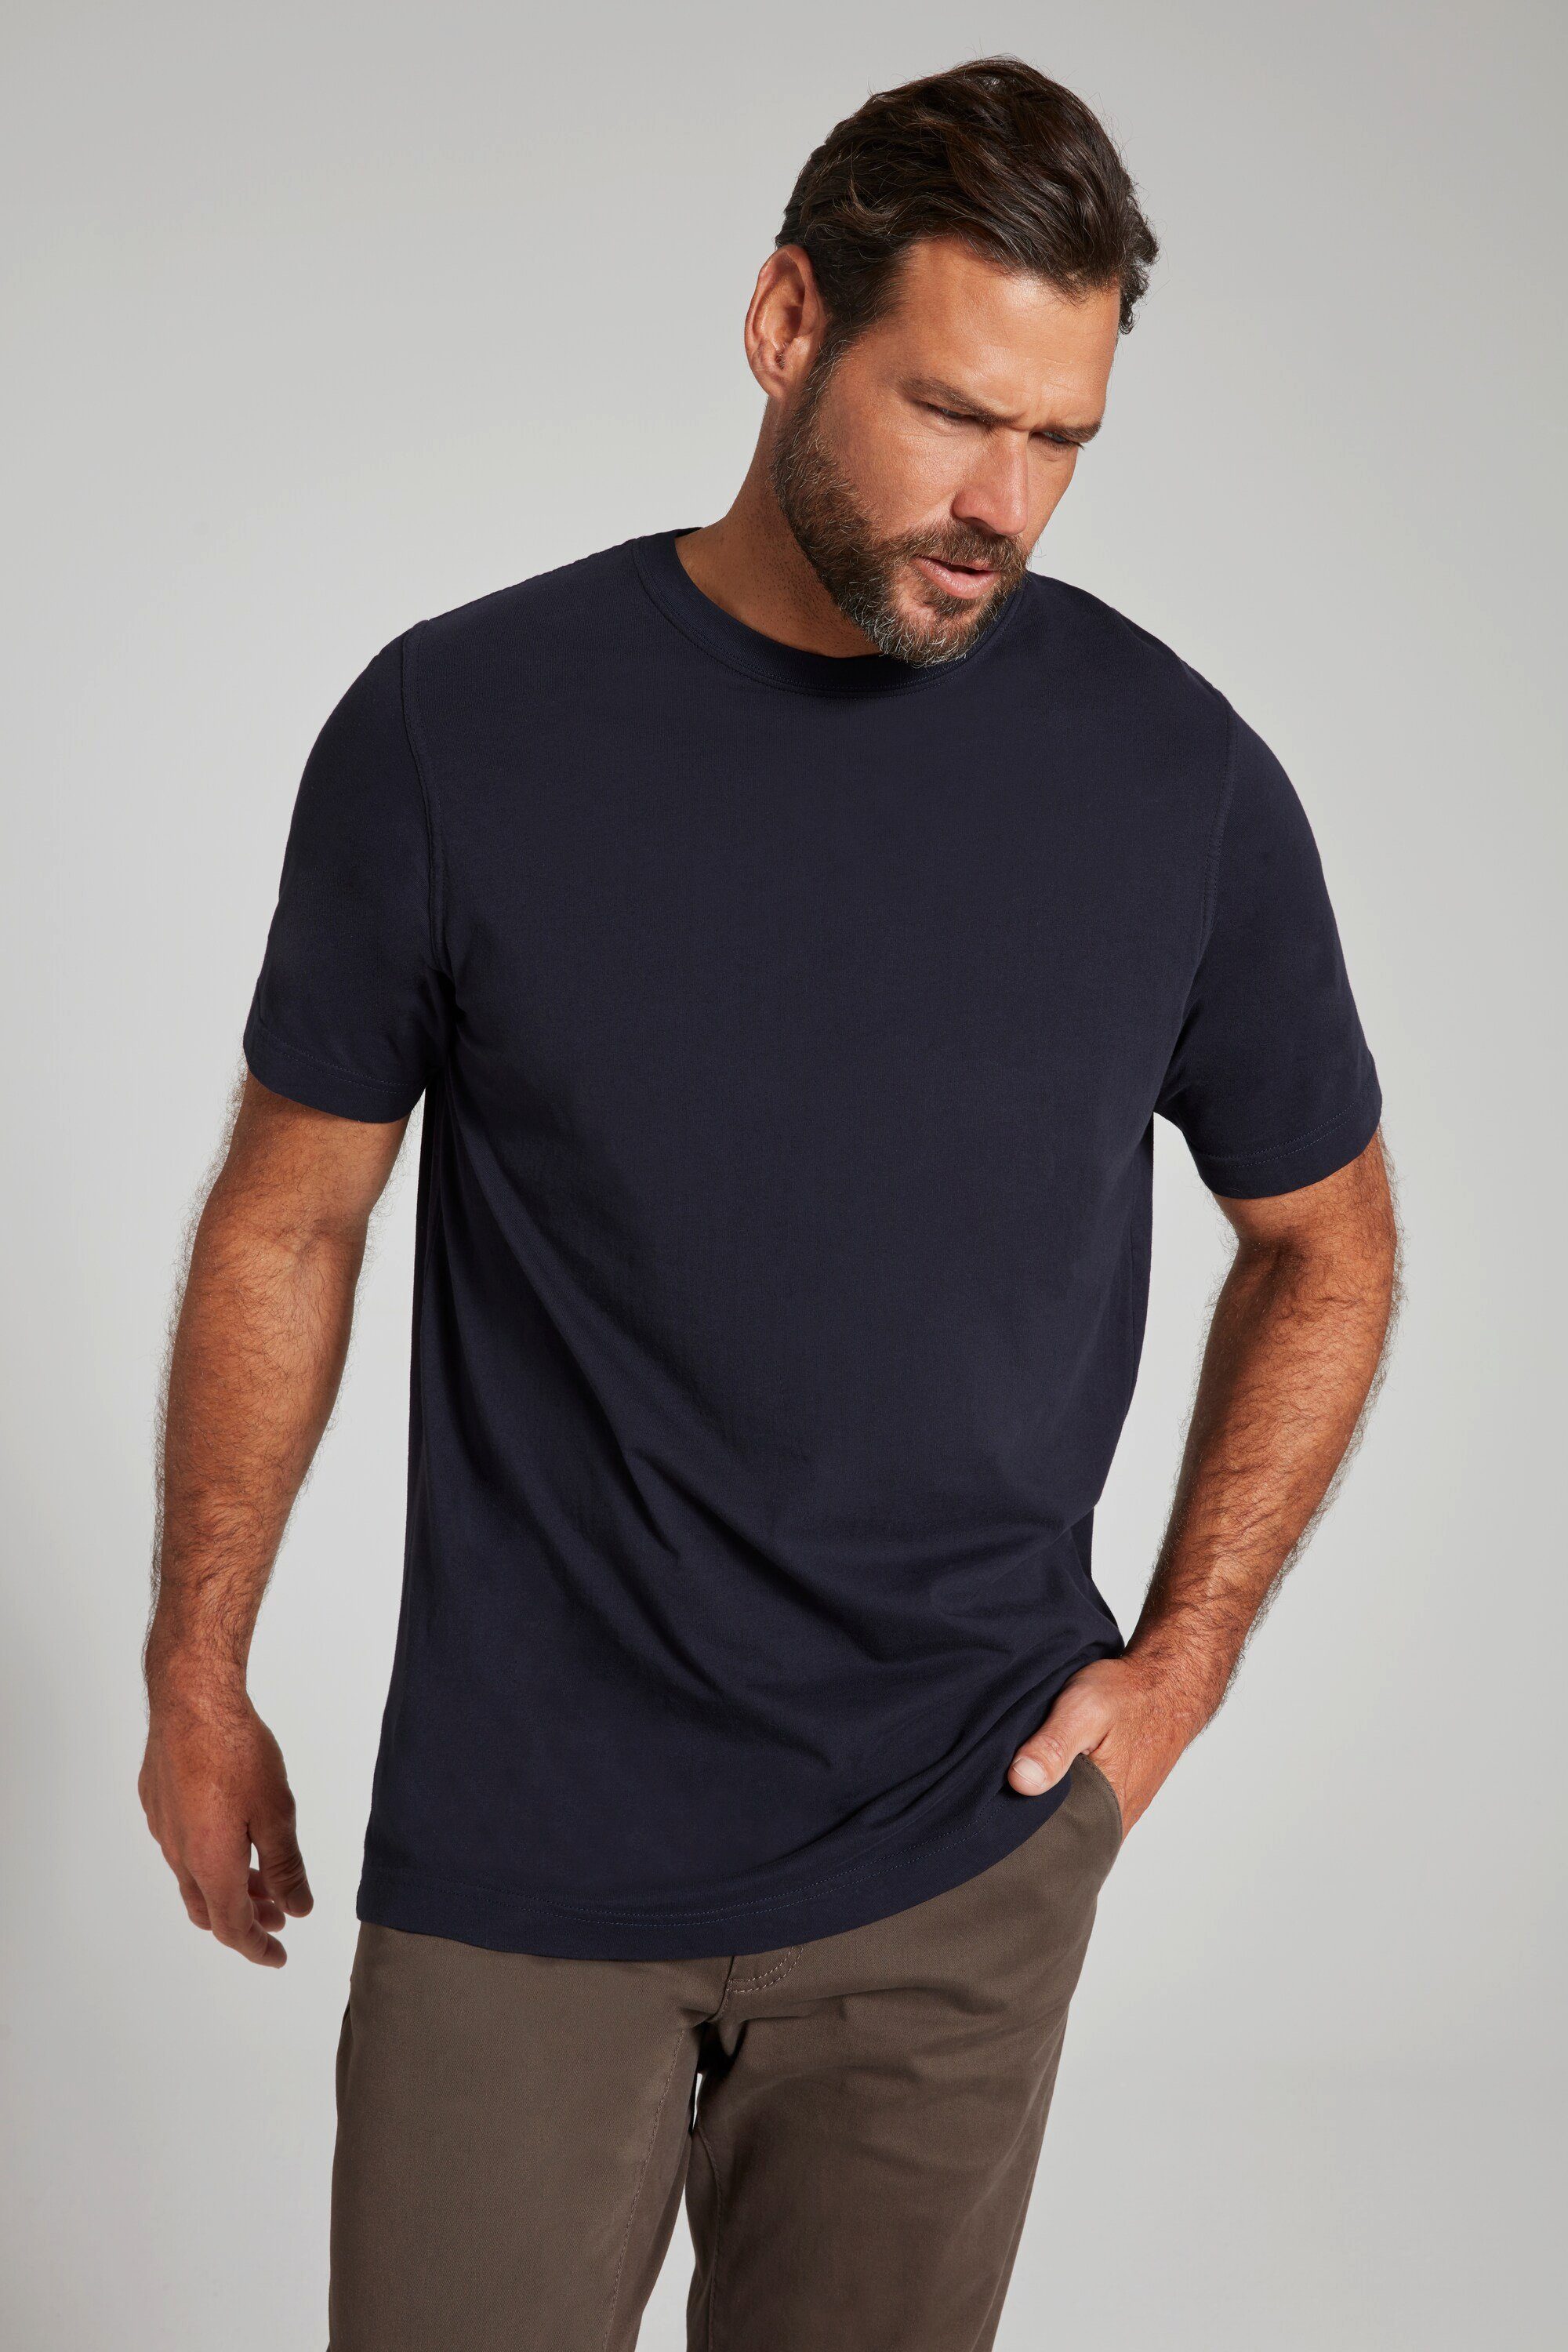 marine JP1880 T-Shirt gekämmte T-Shirt Rundhals bis 8XL Basic Baumwolle dunkel